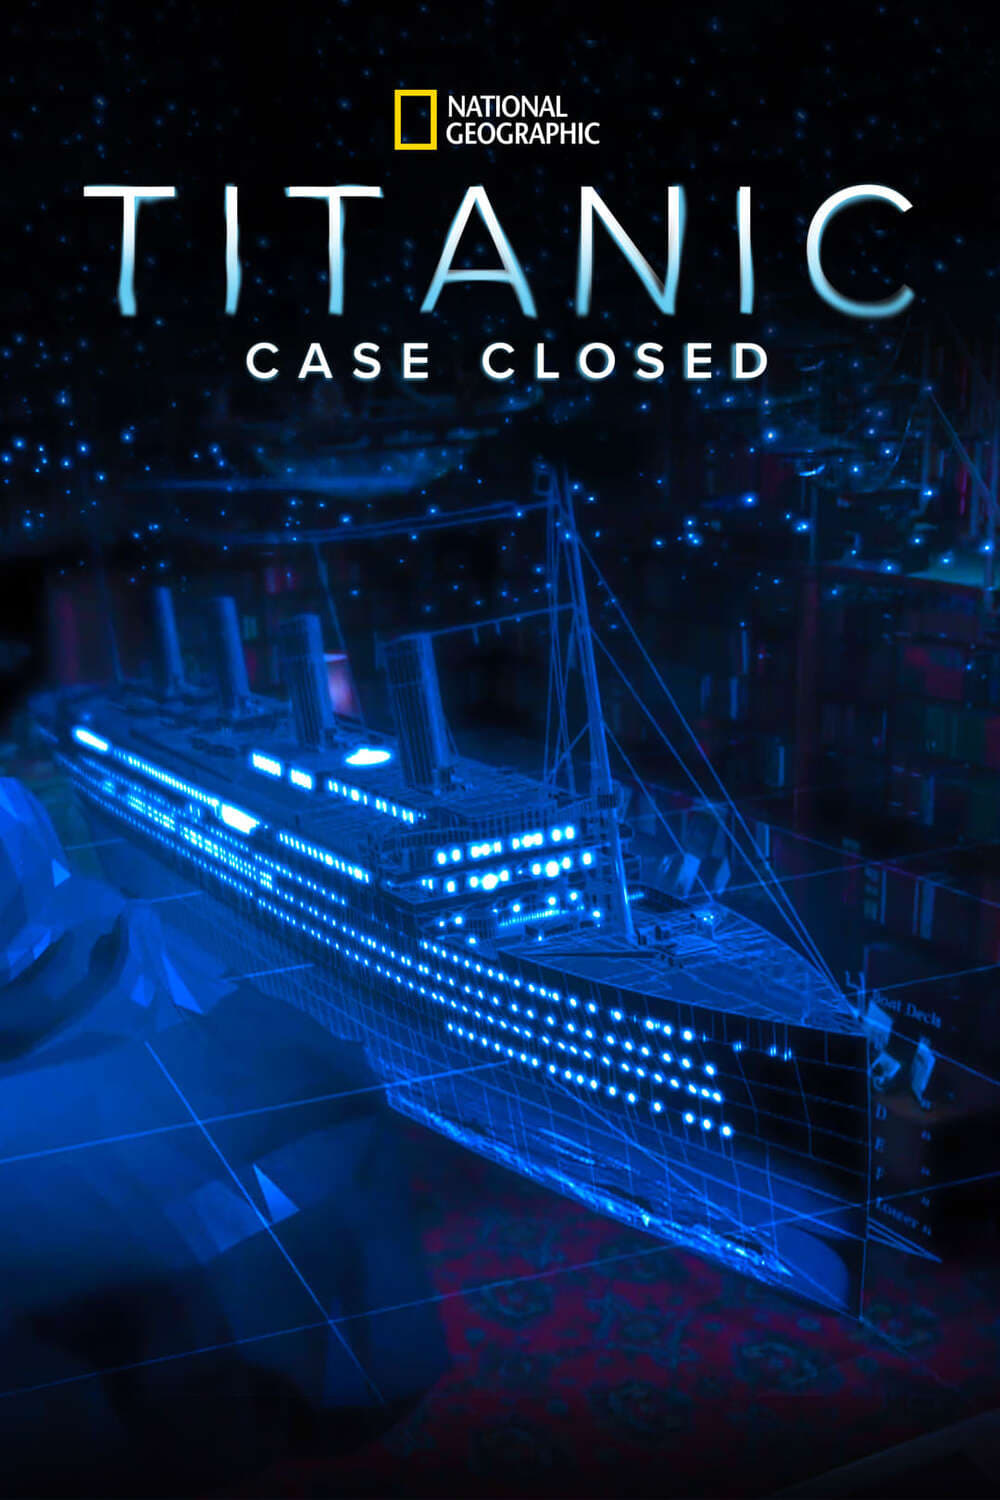 Titanic: Case Closed